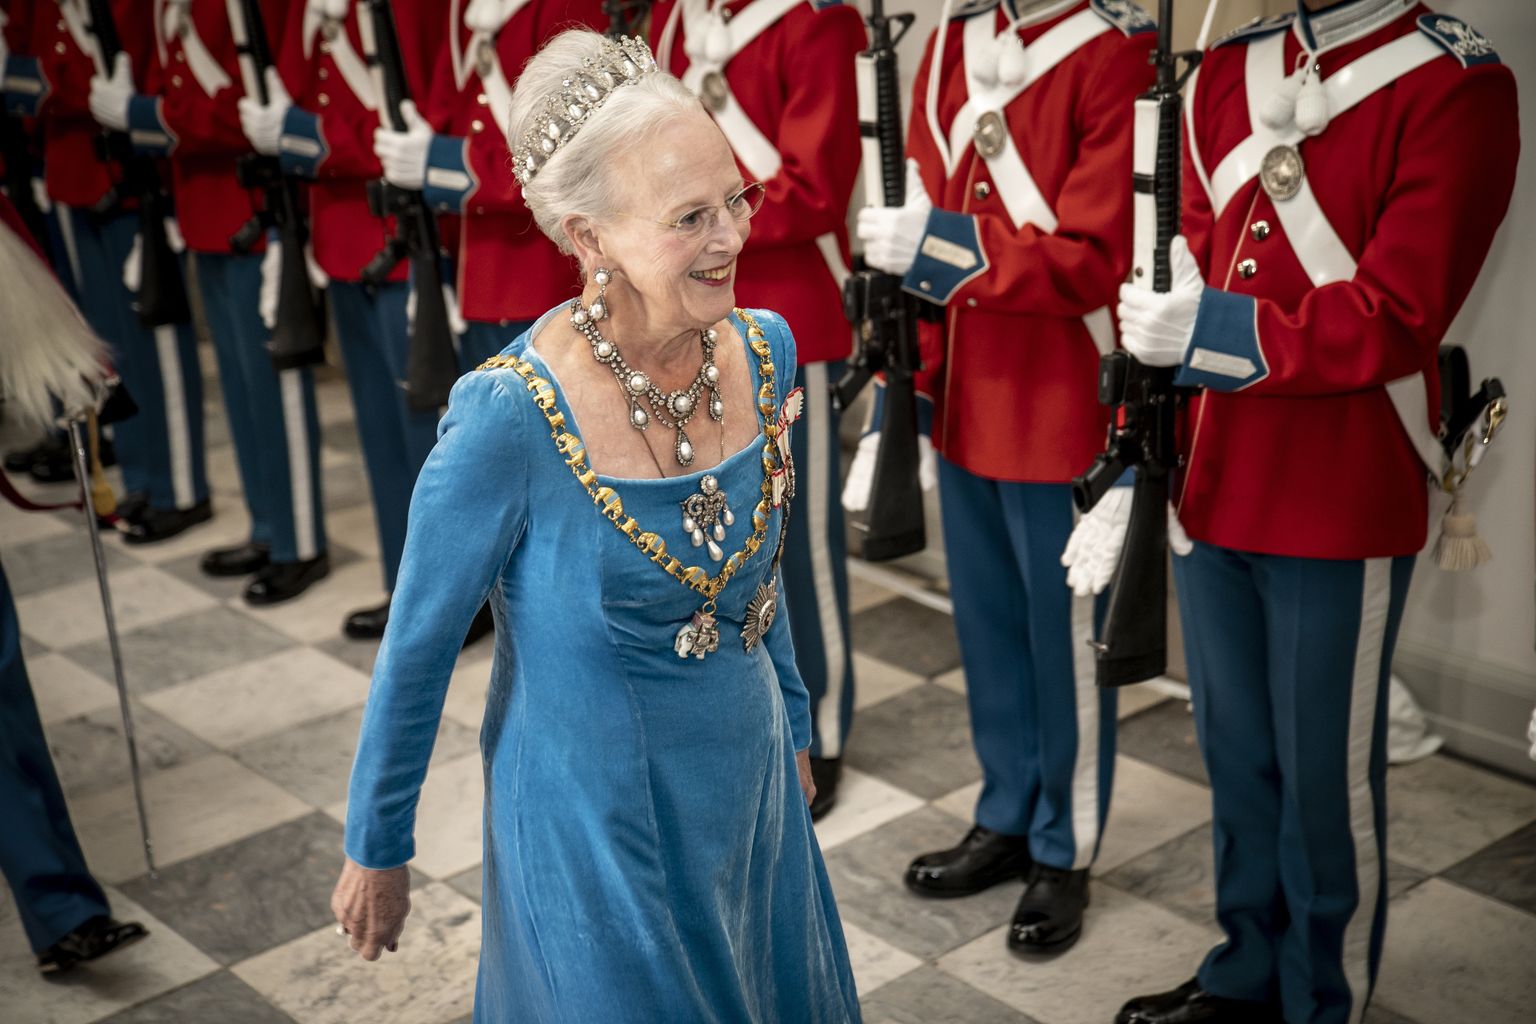 Taani kuninganna Margrethe II suundumas 11. septembril 2022 Christiansborgi palees oma 50. valitsemisaasta troonijuubeli banketile